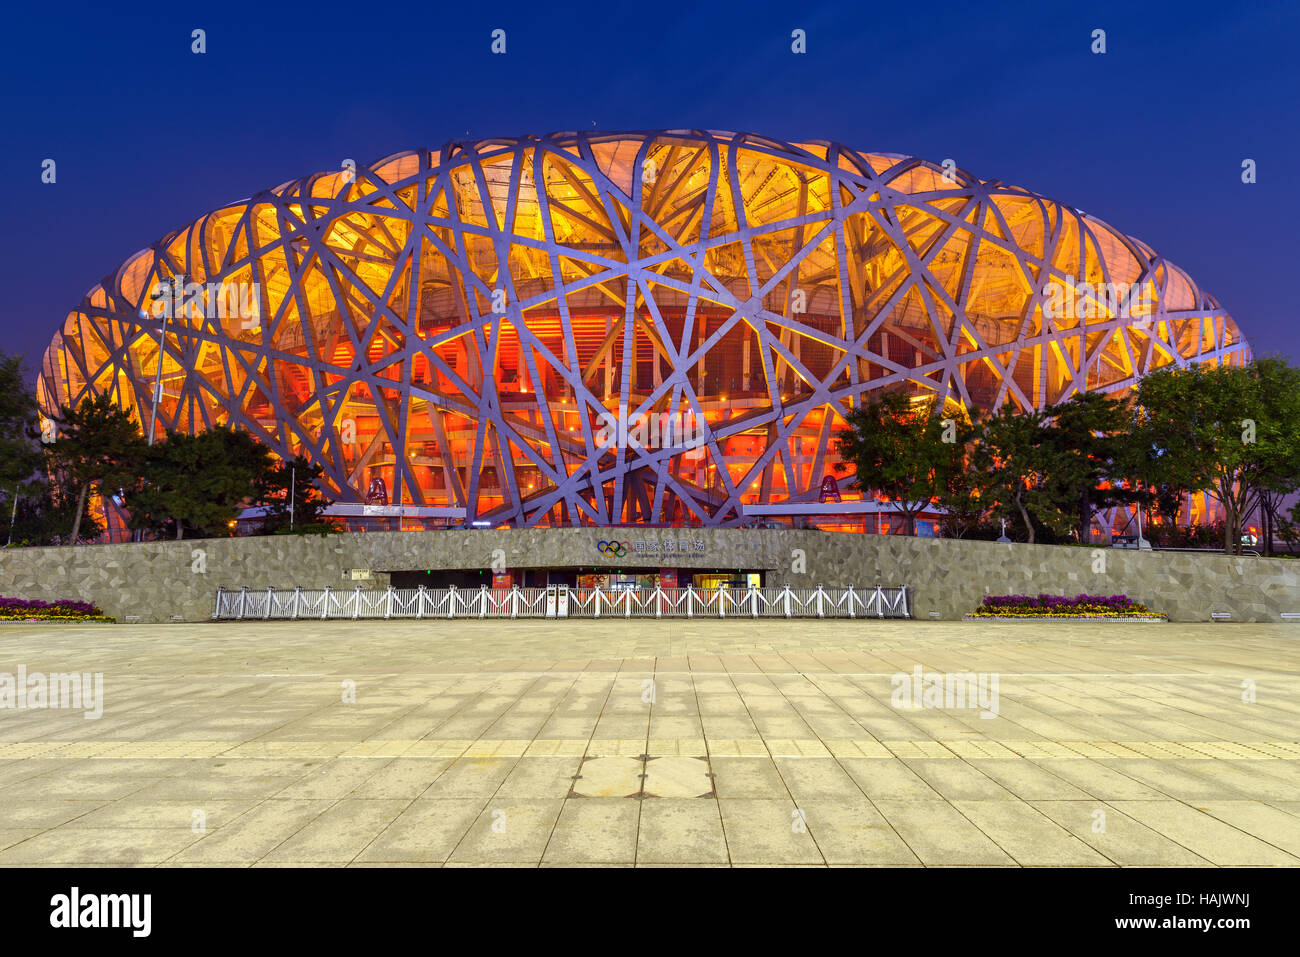 Stade national de Pékin - un front large-angle vue de la nuit de Beijing National Stadium, également connu sous le nom de nid d'oiseau, à l'Olympic Park Banque D'Images